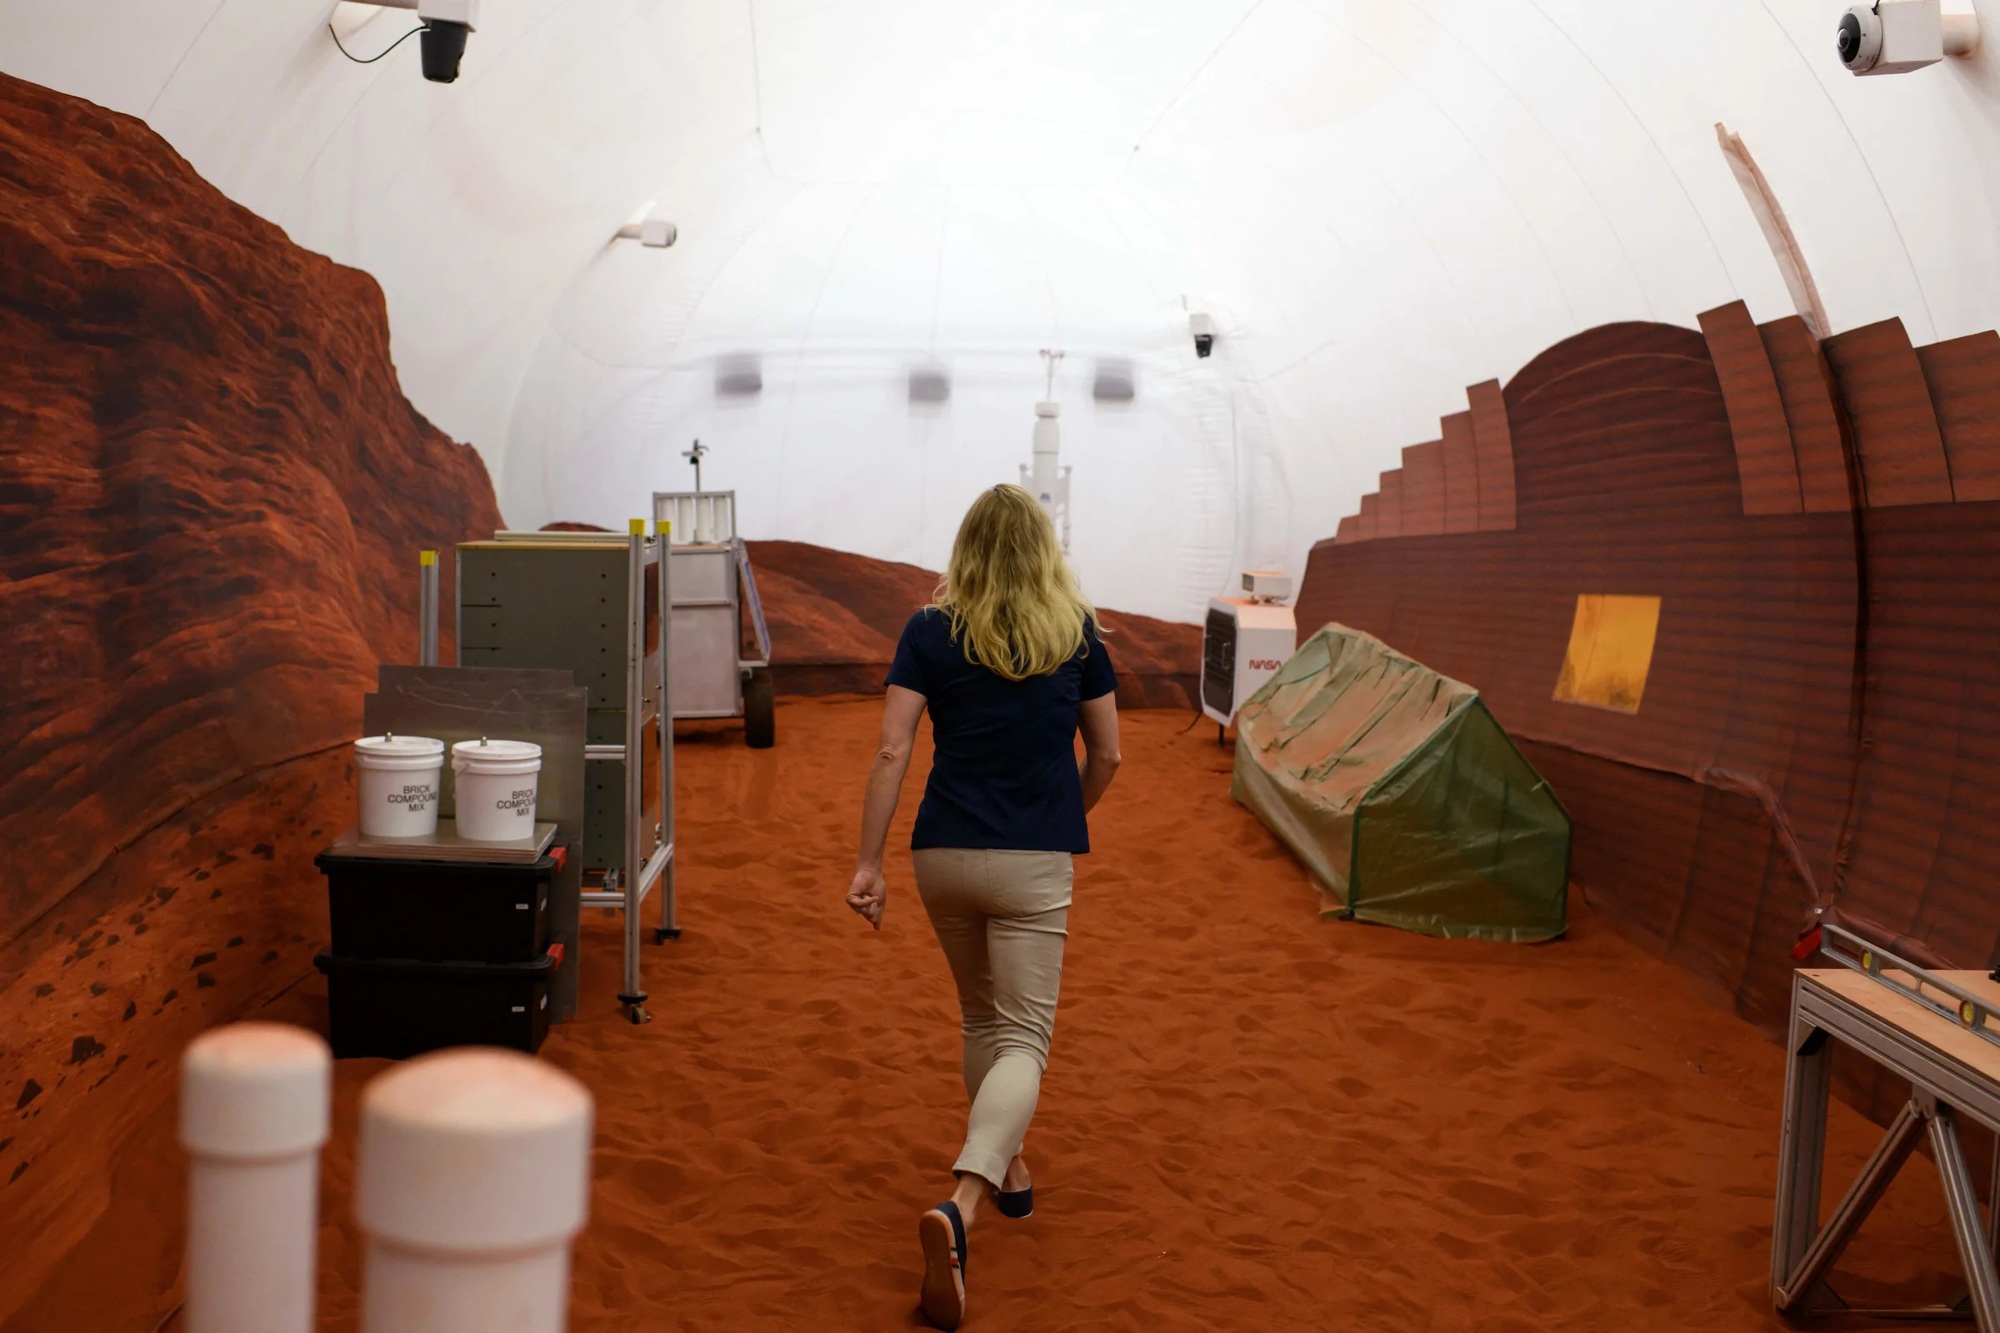 Thử nghiệm chưa từng có của NASA: Nhóm 4 người bắt đầu &quot;sống trên sao Hỏa&quot;, gặp thách thức không tưởng - Ảnh 2.